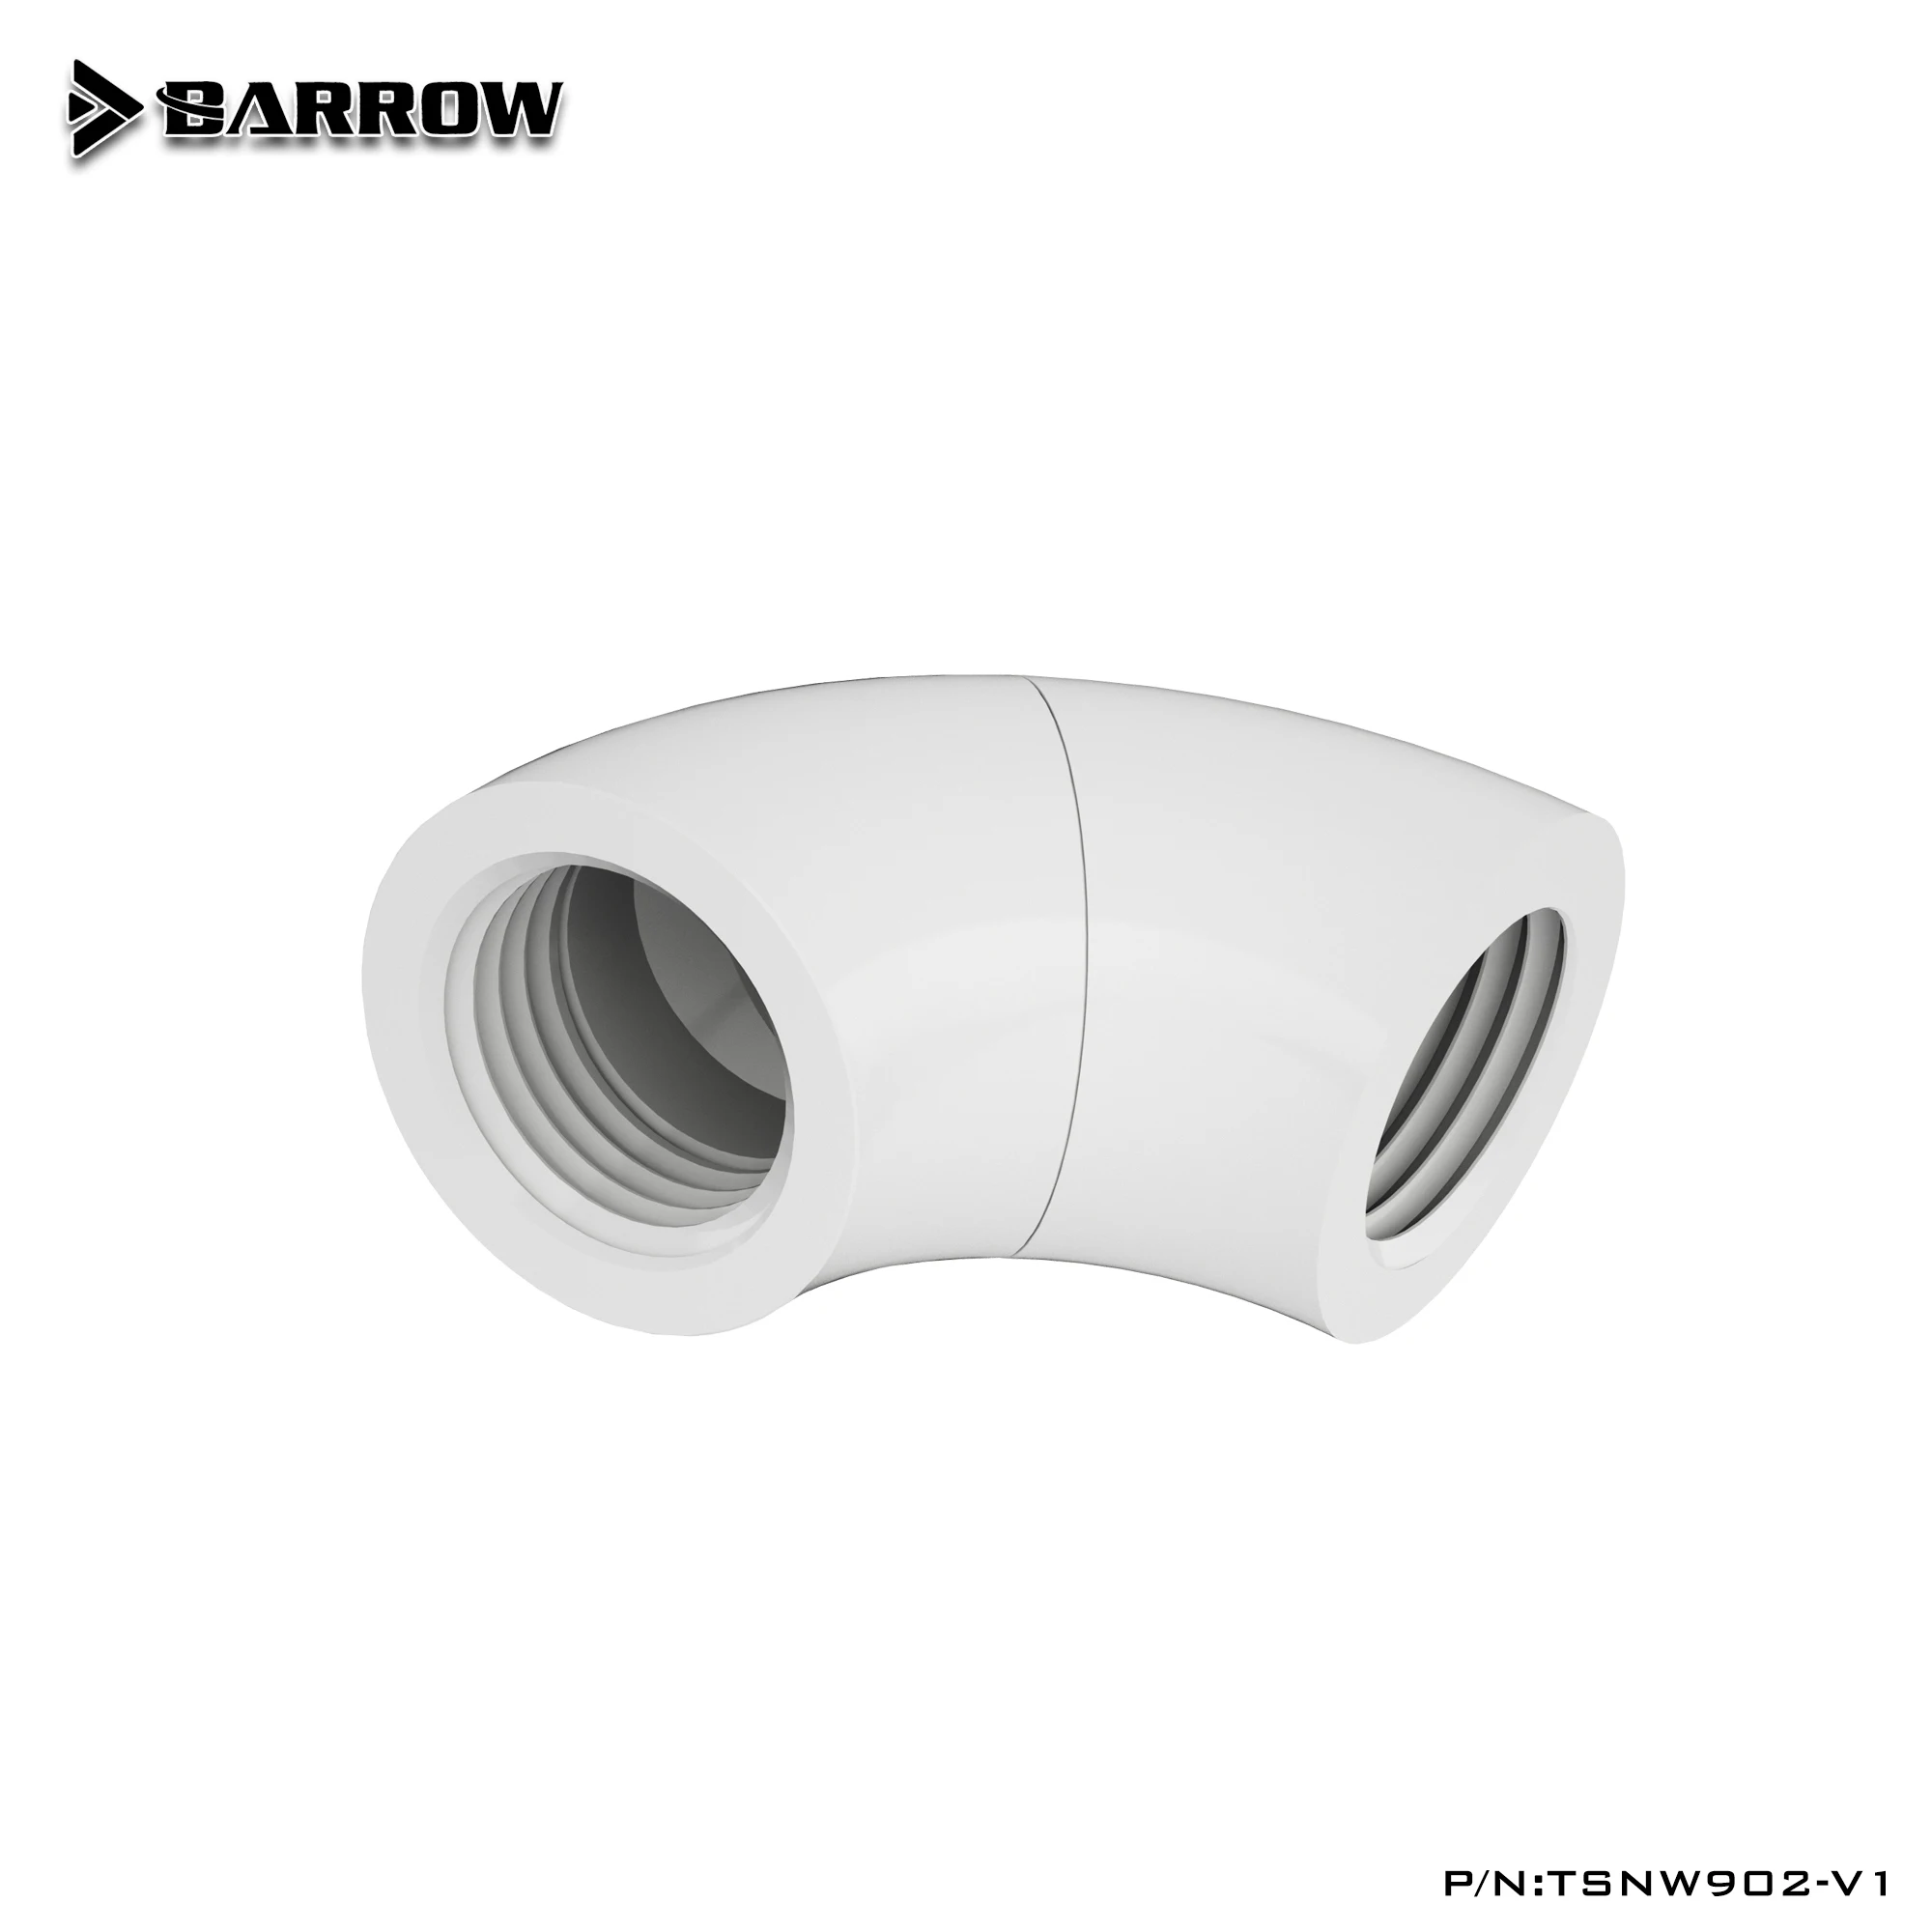 

Barrow G1/4, 90 °, змеевик поворотный Переходник (гнездо-гнездо), поворотный фитинг на 360 °, TSNW902-V1